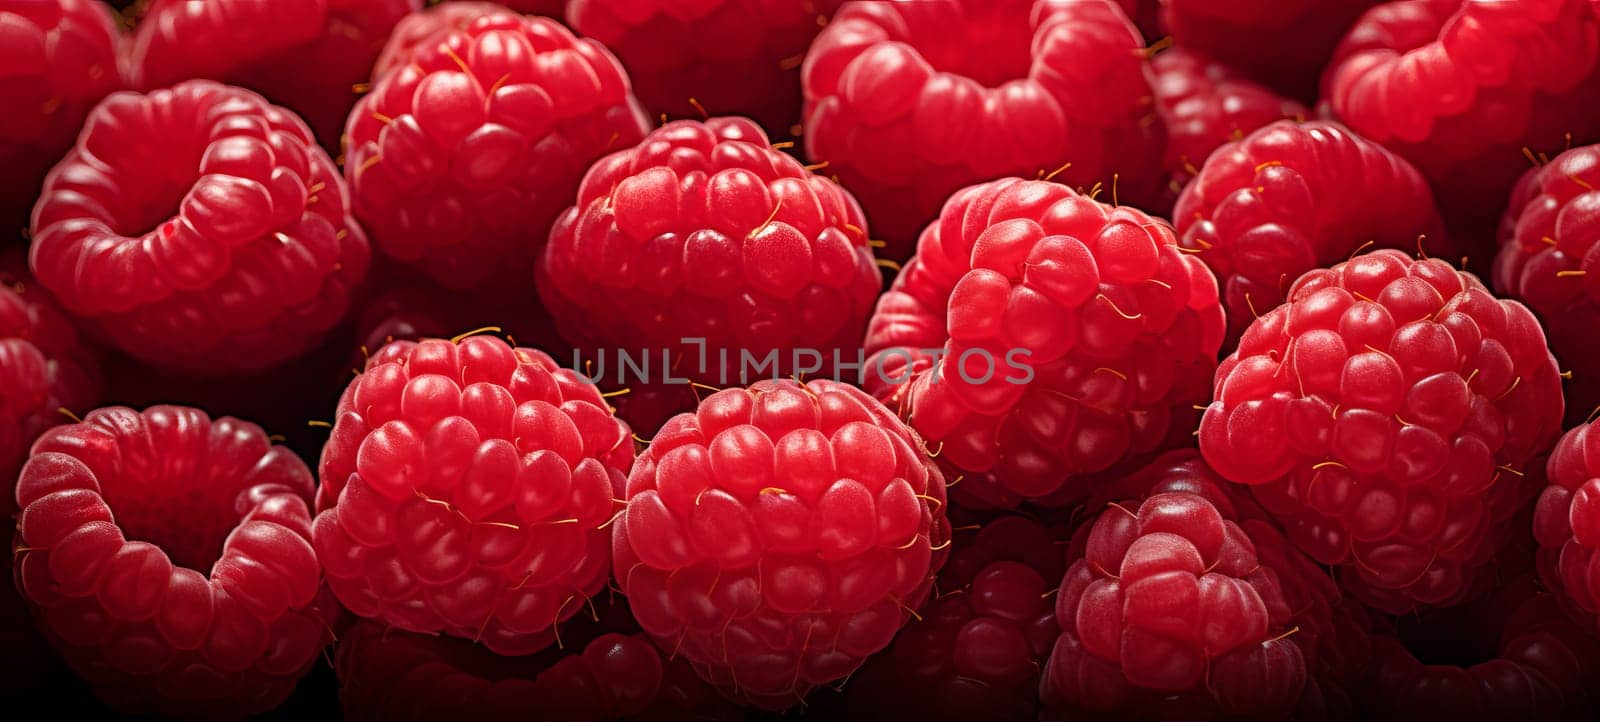 fruit banner from the harvest of ripe organic raspberries.